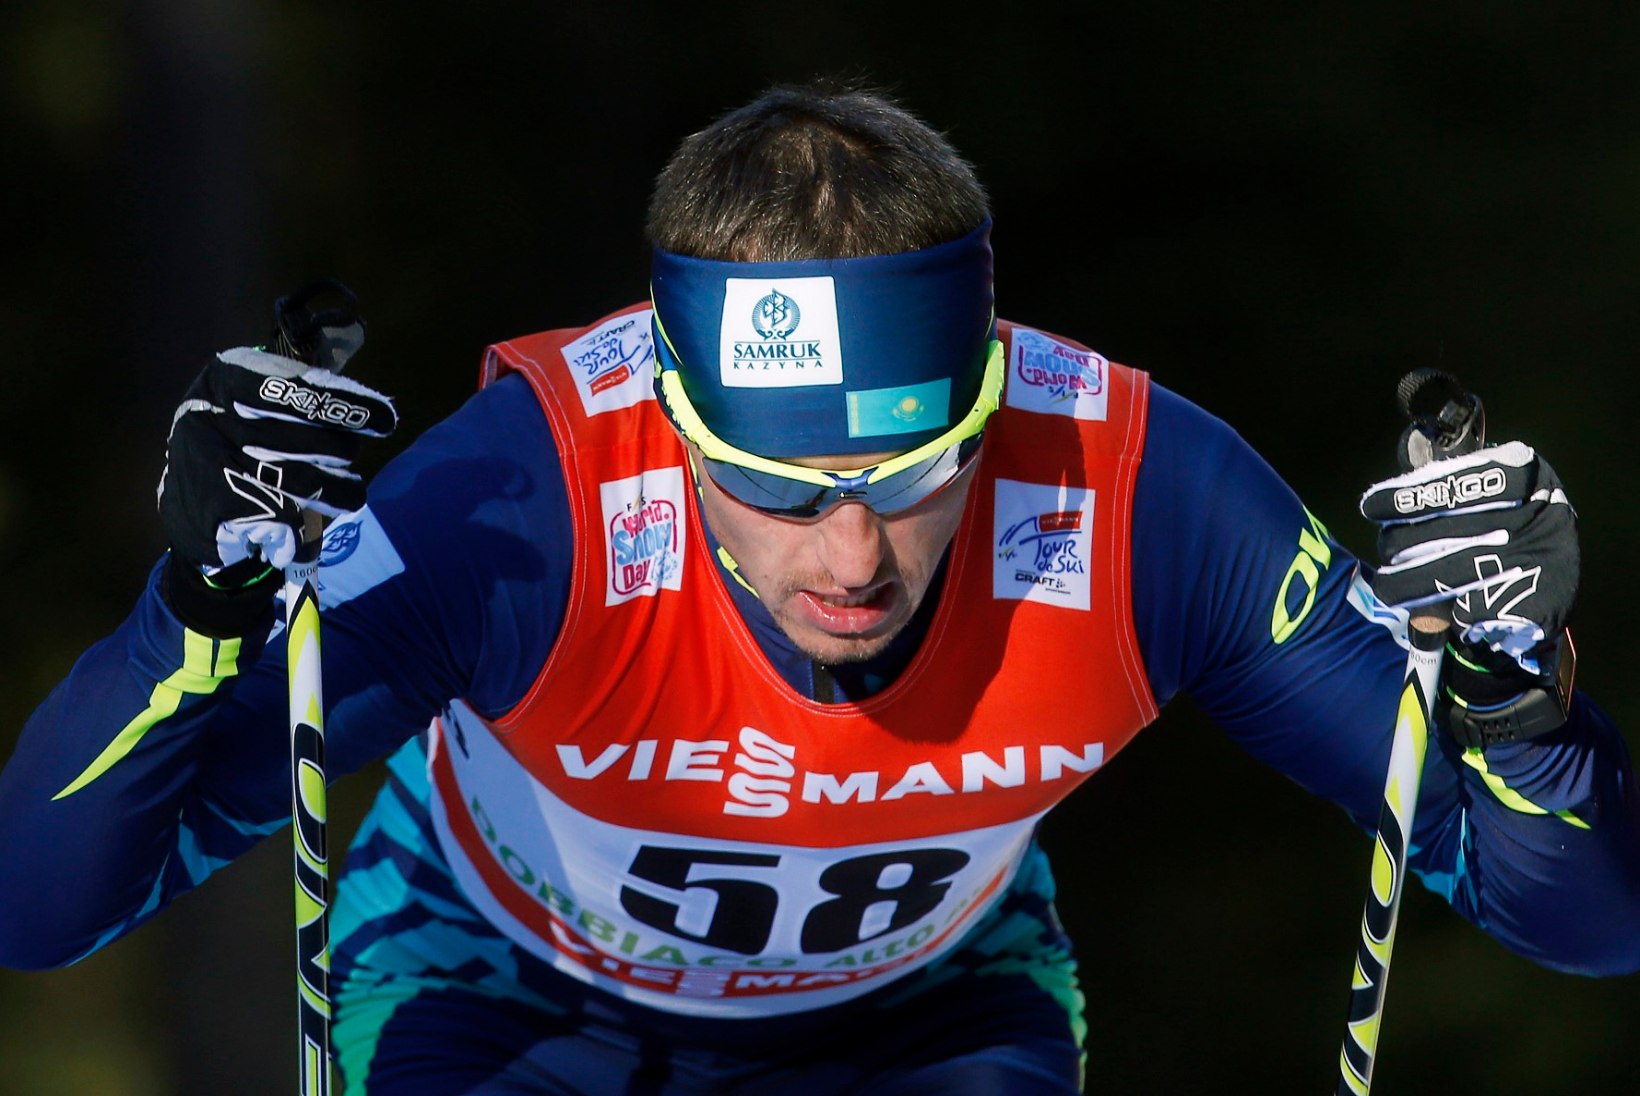 FOTOD: Poltoranin võttis Tour de Skil võidu, kasutades üksnes paaristõukeid!